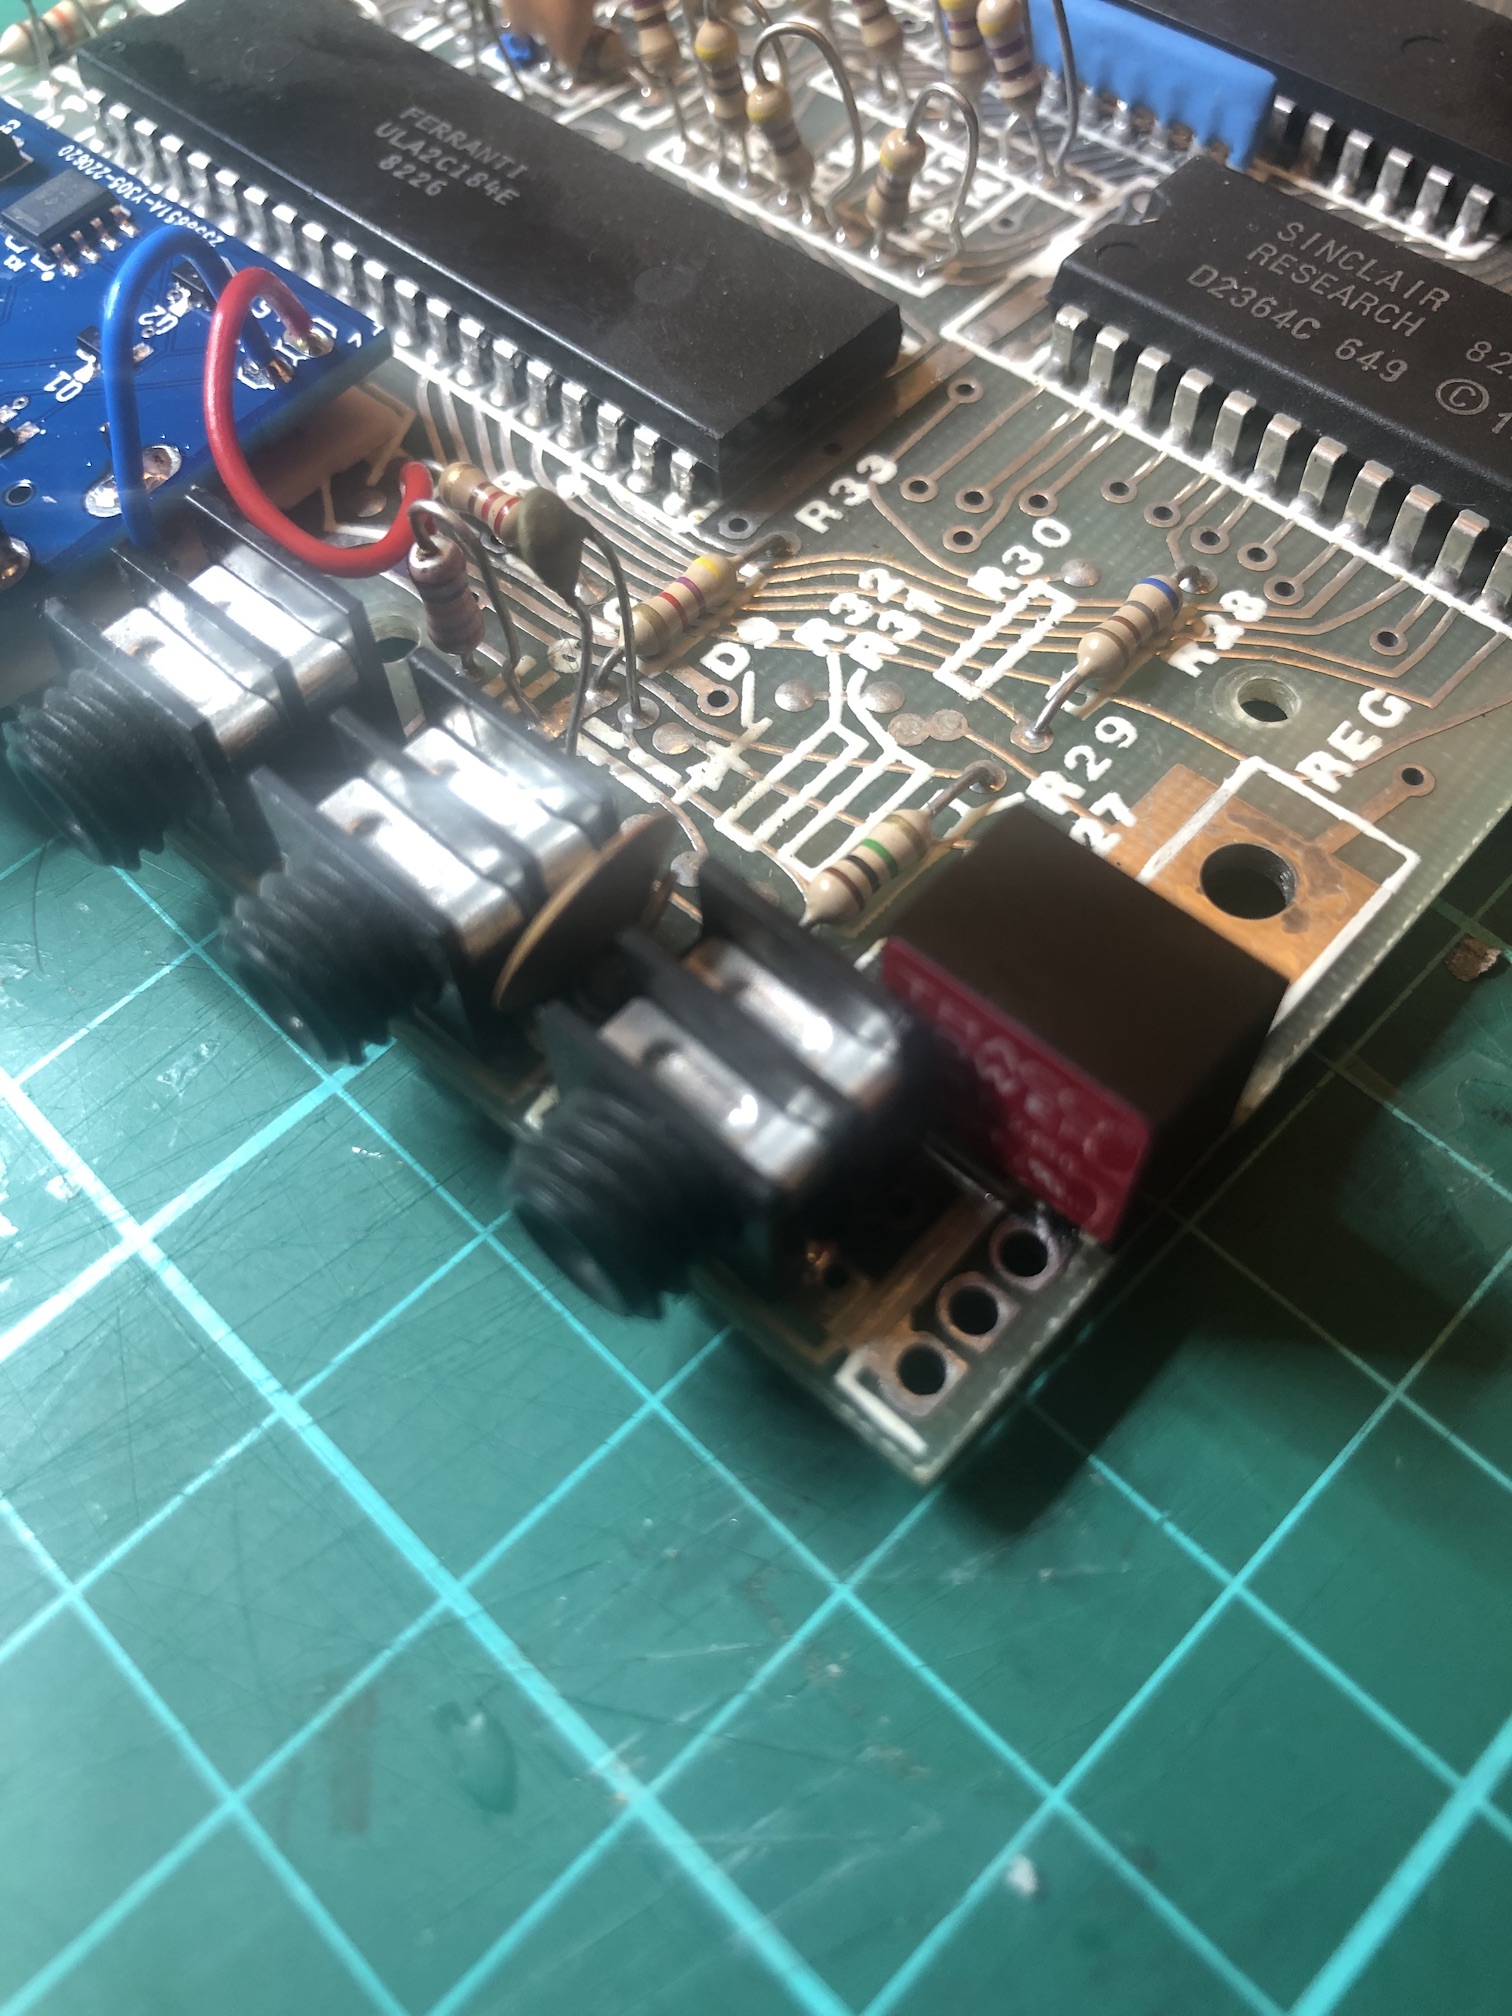 ZX81 with new voltage regulator